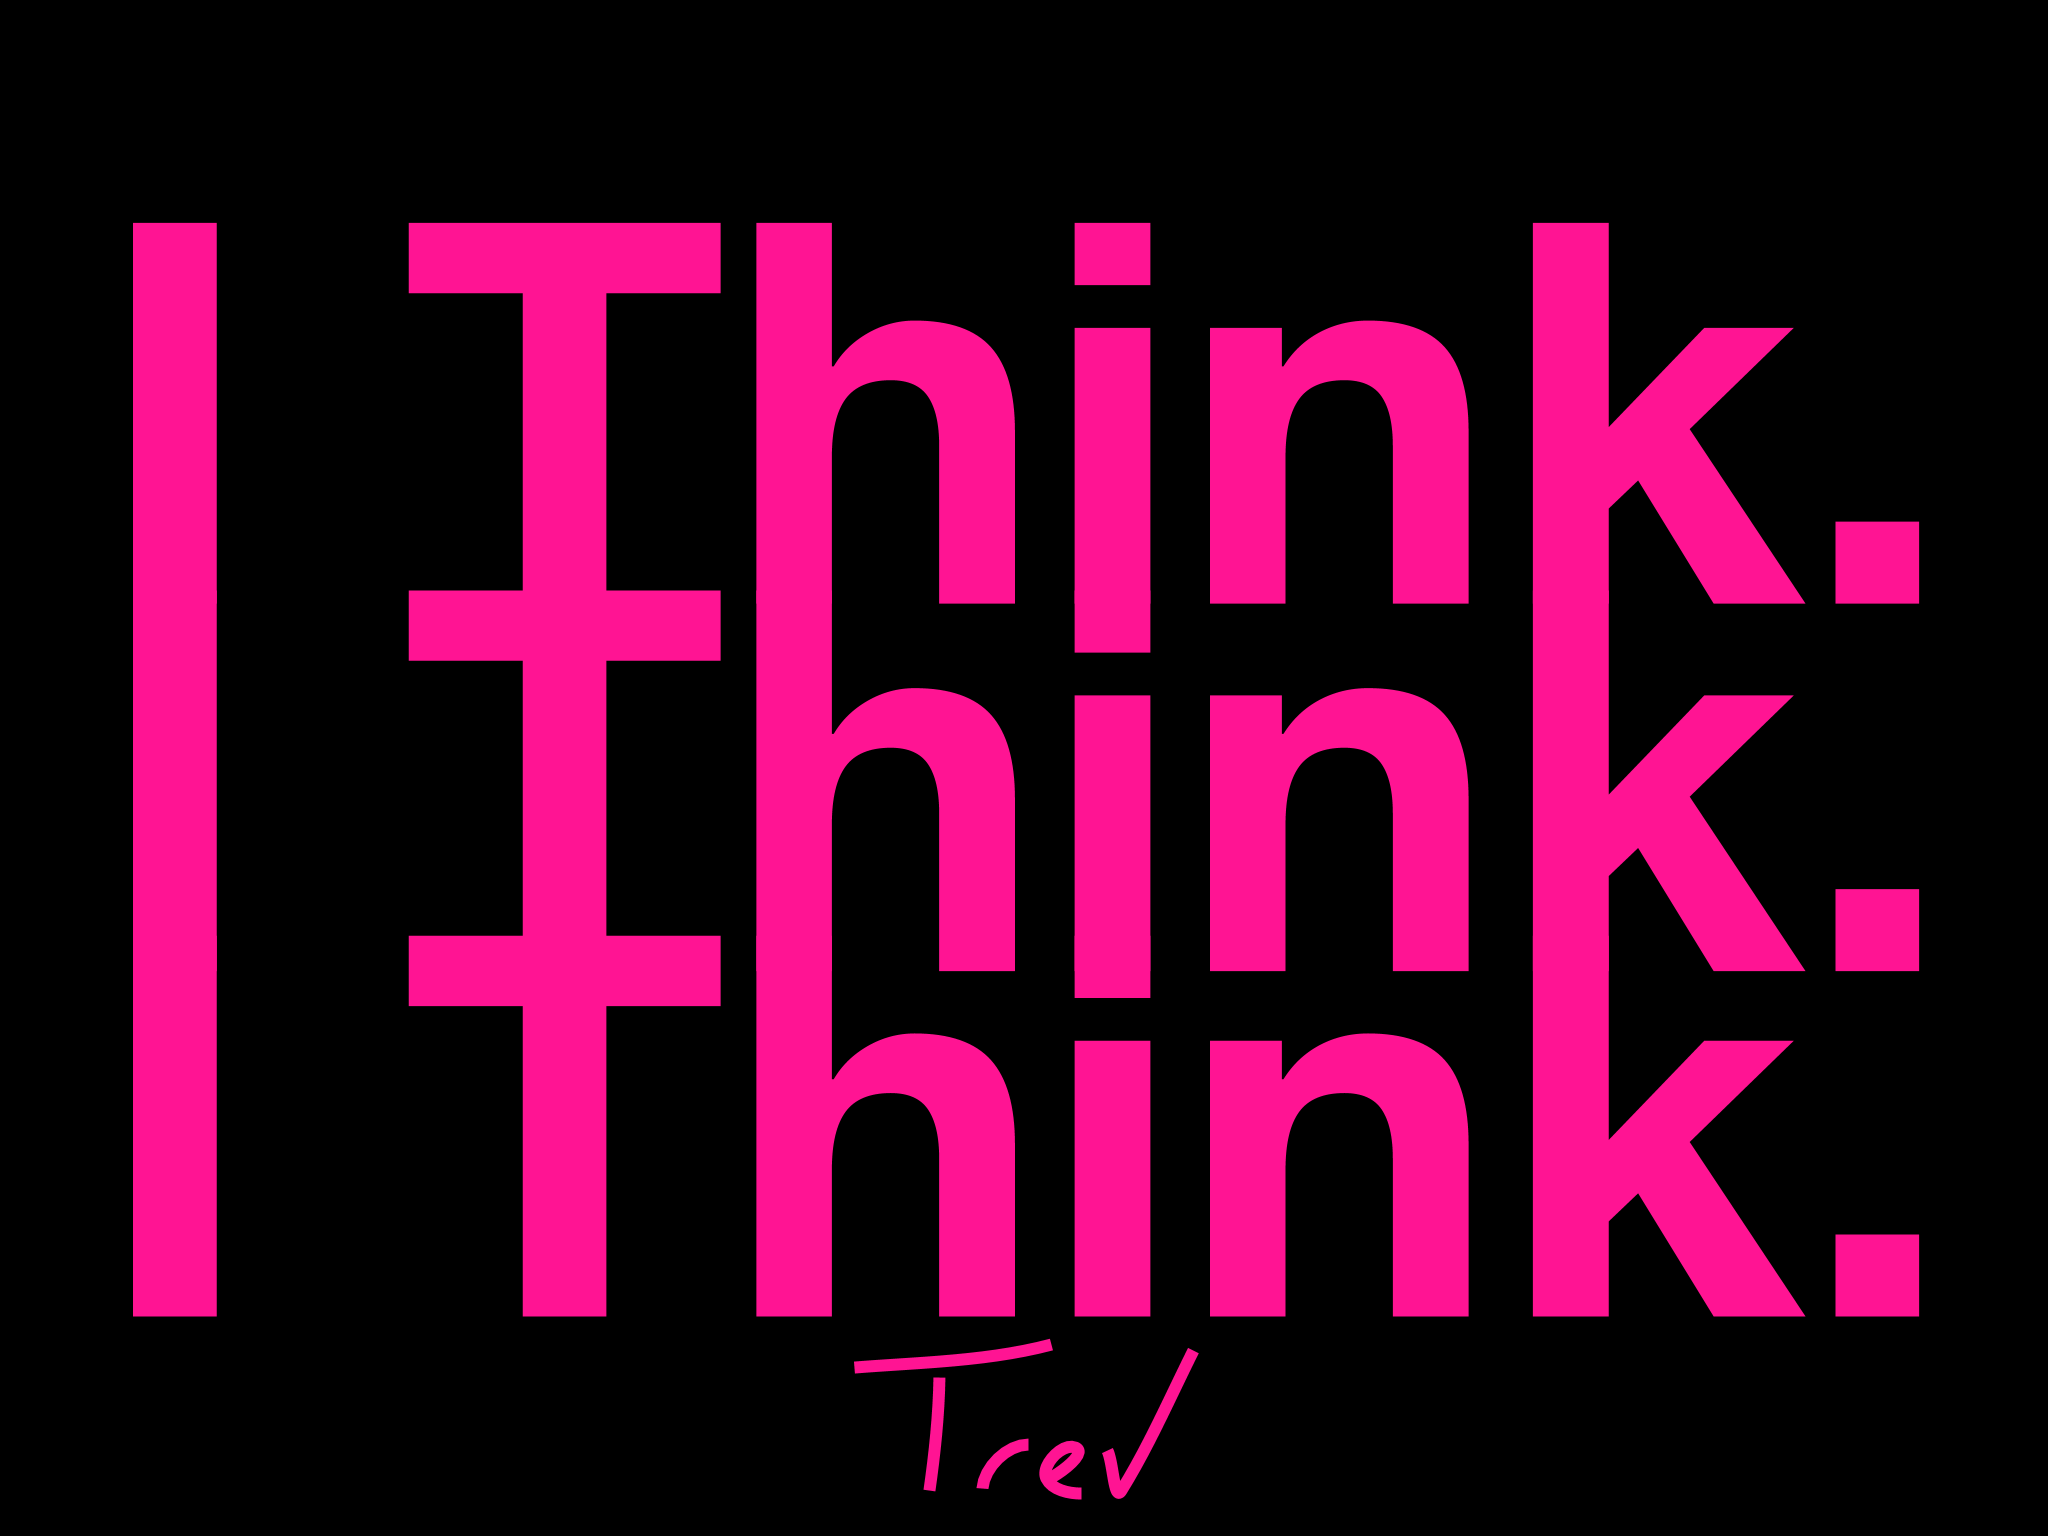 I Think. I Think. I Think.